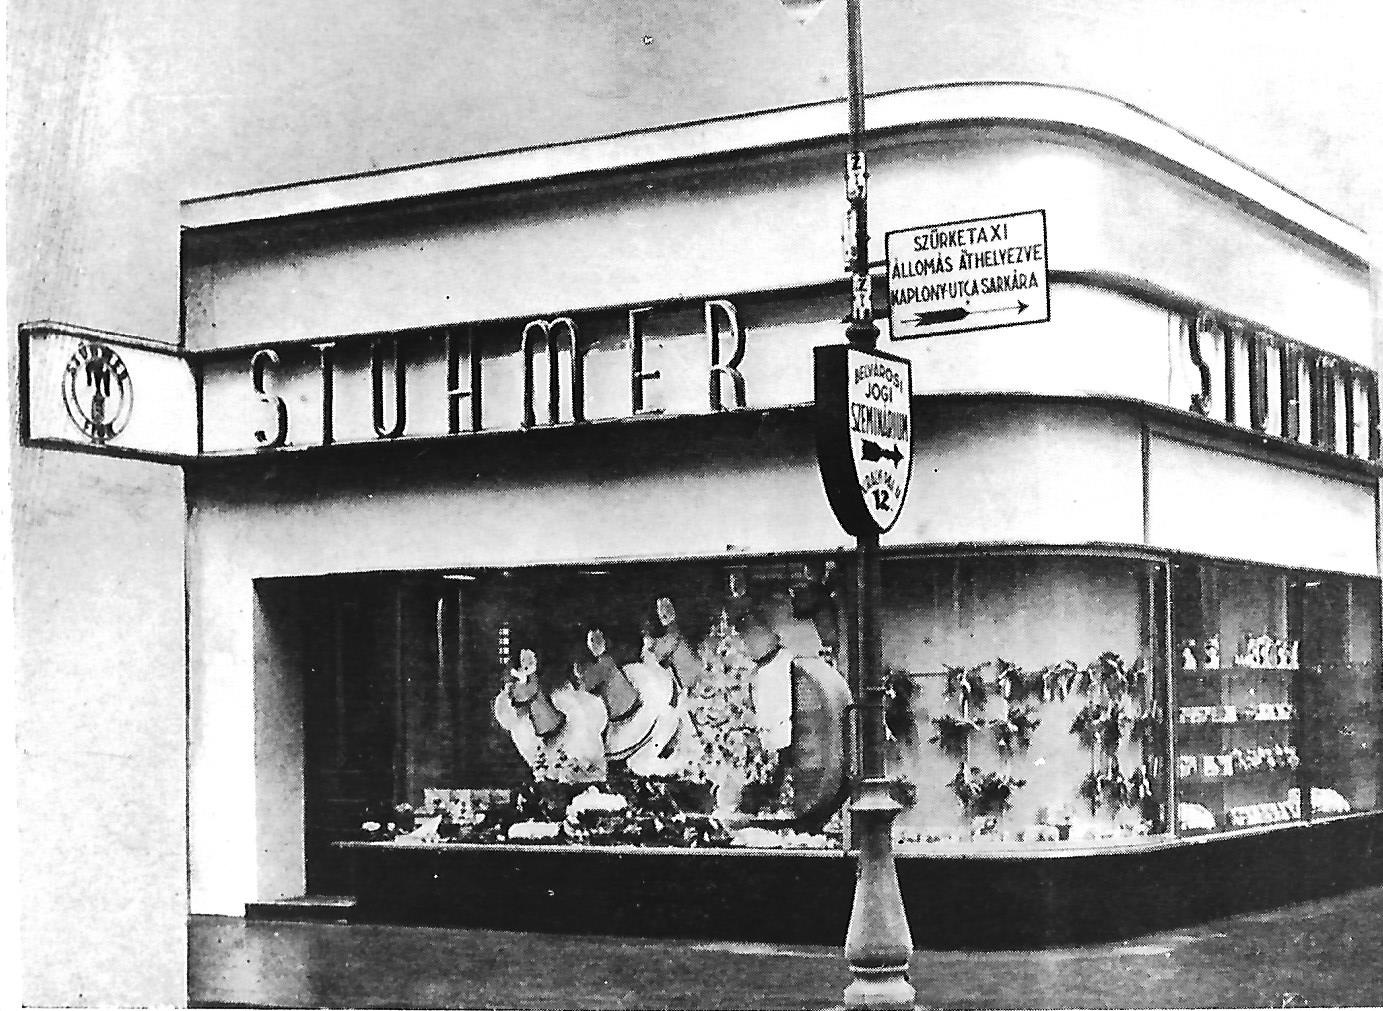 Stühmer üzlet Budapest 1935. (Magyar Kereskedelmi és Vendéglátóipari Múzeum CC BY-NC-ND)